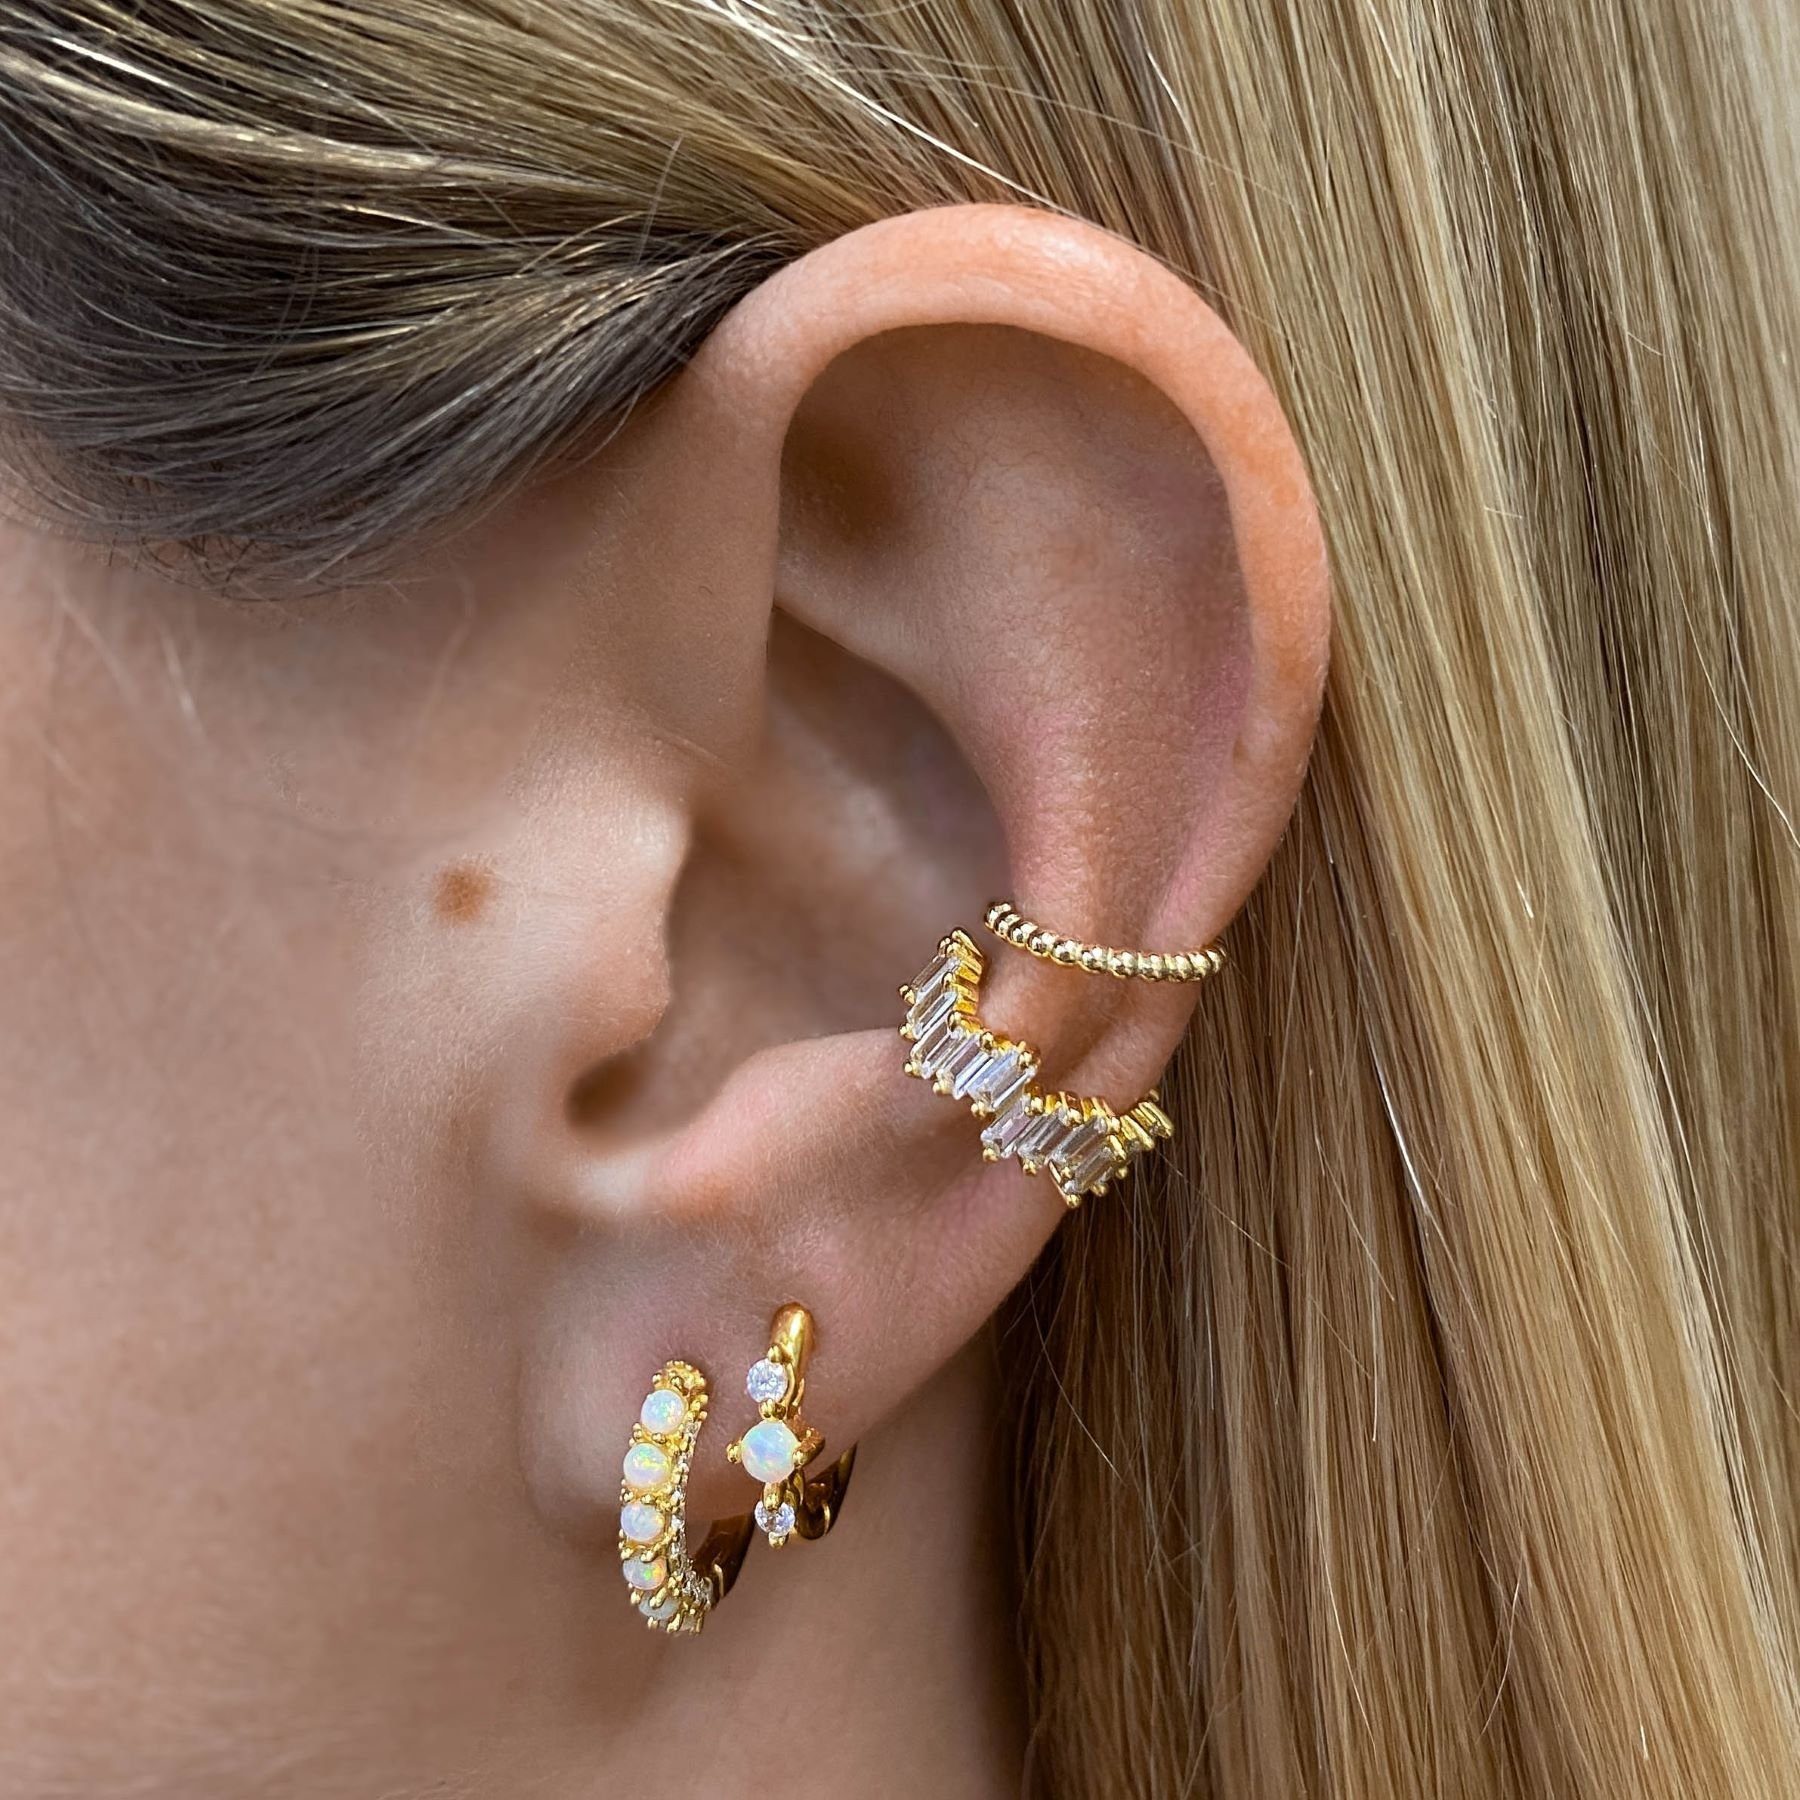 Brandlinger Paar Creolen Opal vergoldet, weiße Positano, 925 Silber und Ohrringe Weißer Zirkoniasteine